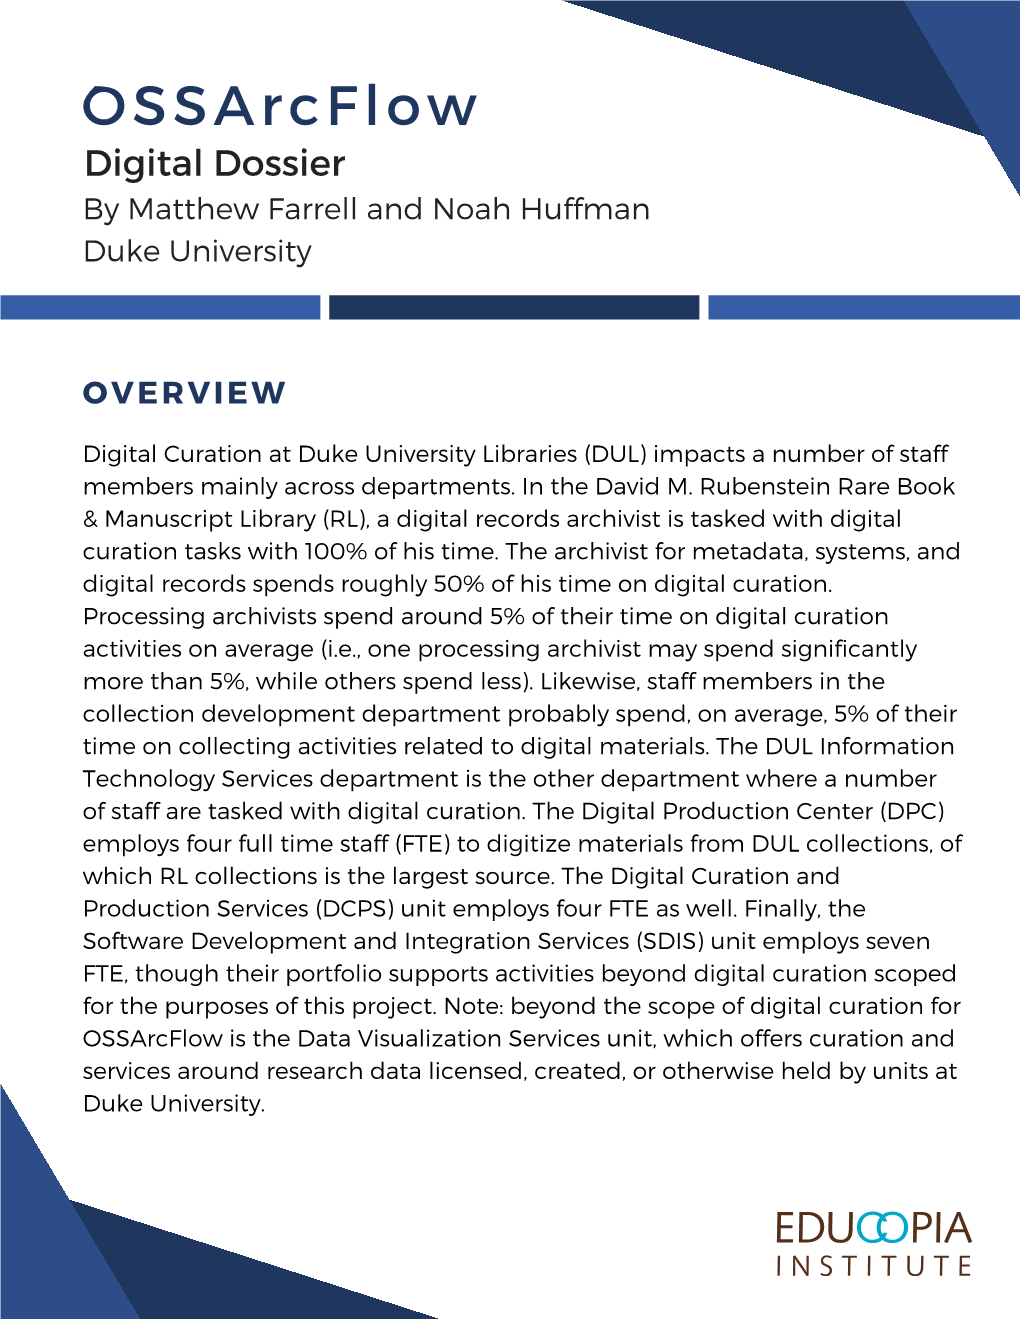 Ossarcflow Digital Dossier by Matthew Farrell and Noah Huffman Duke University